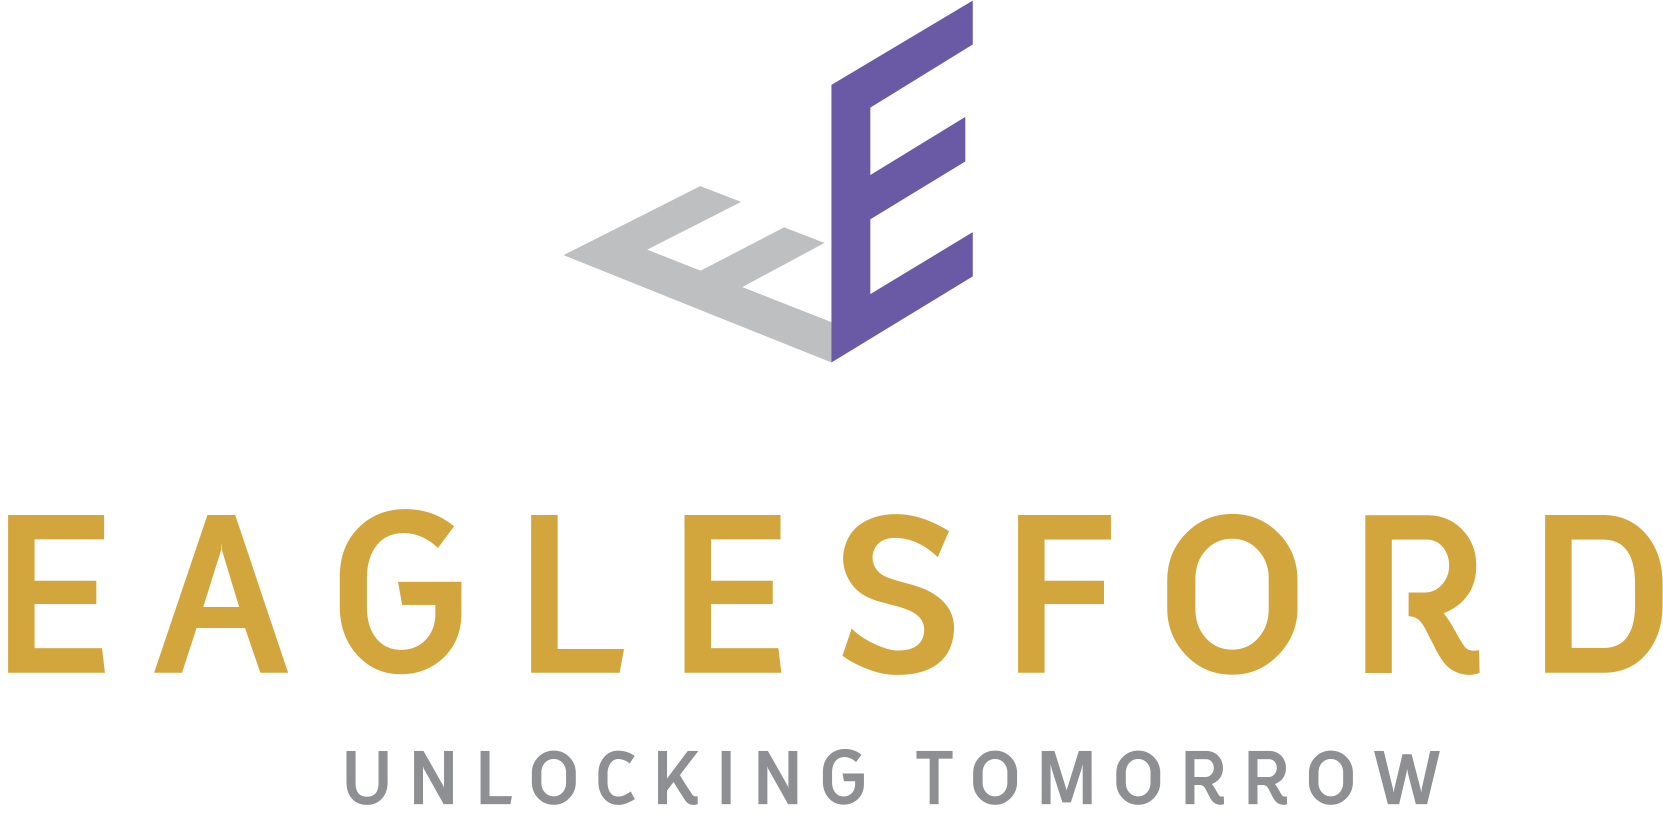 eaglesford logo